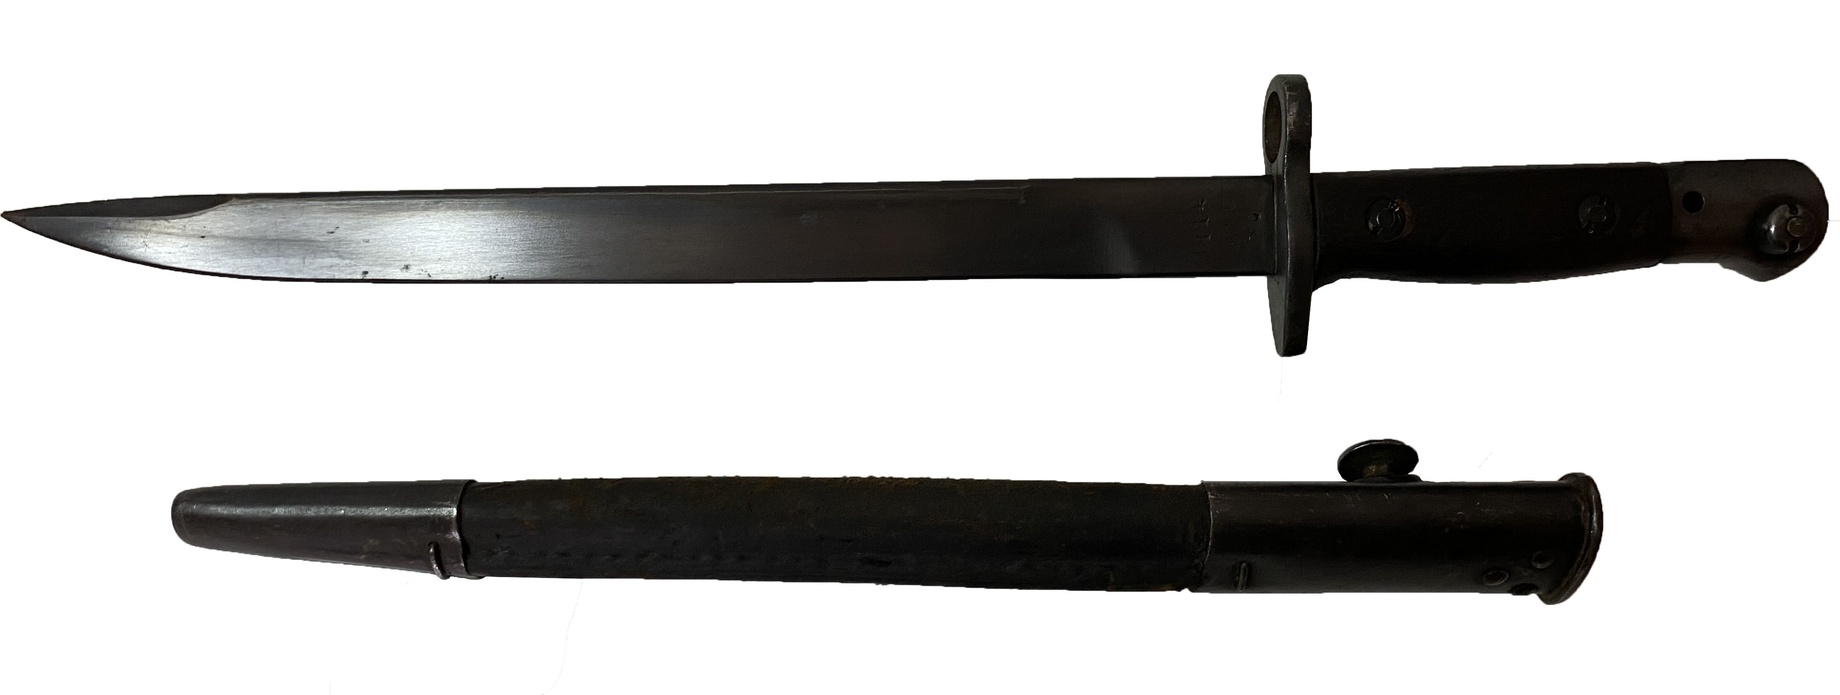 Штык - нож к винтовке Ли Энфилд образца 1907/1913 гг Оригинал